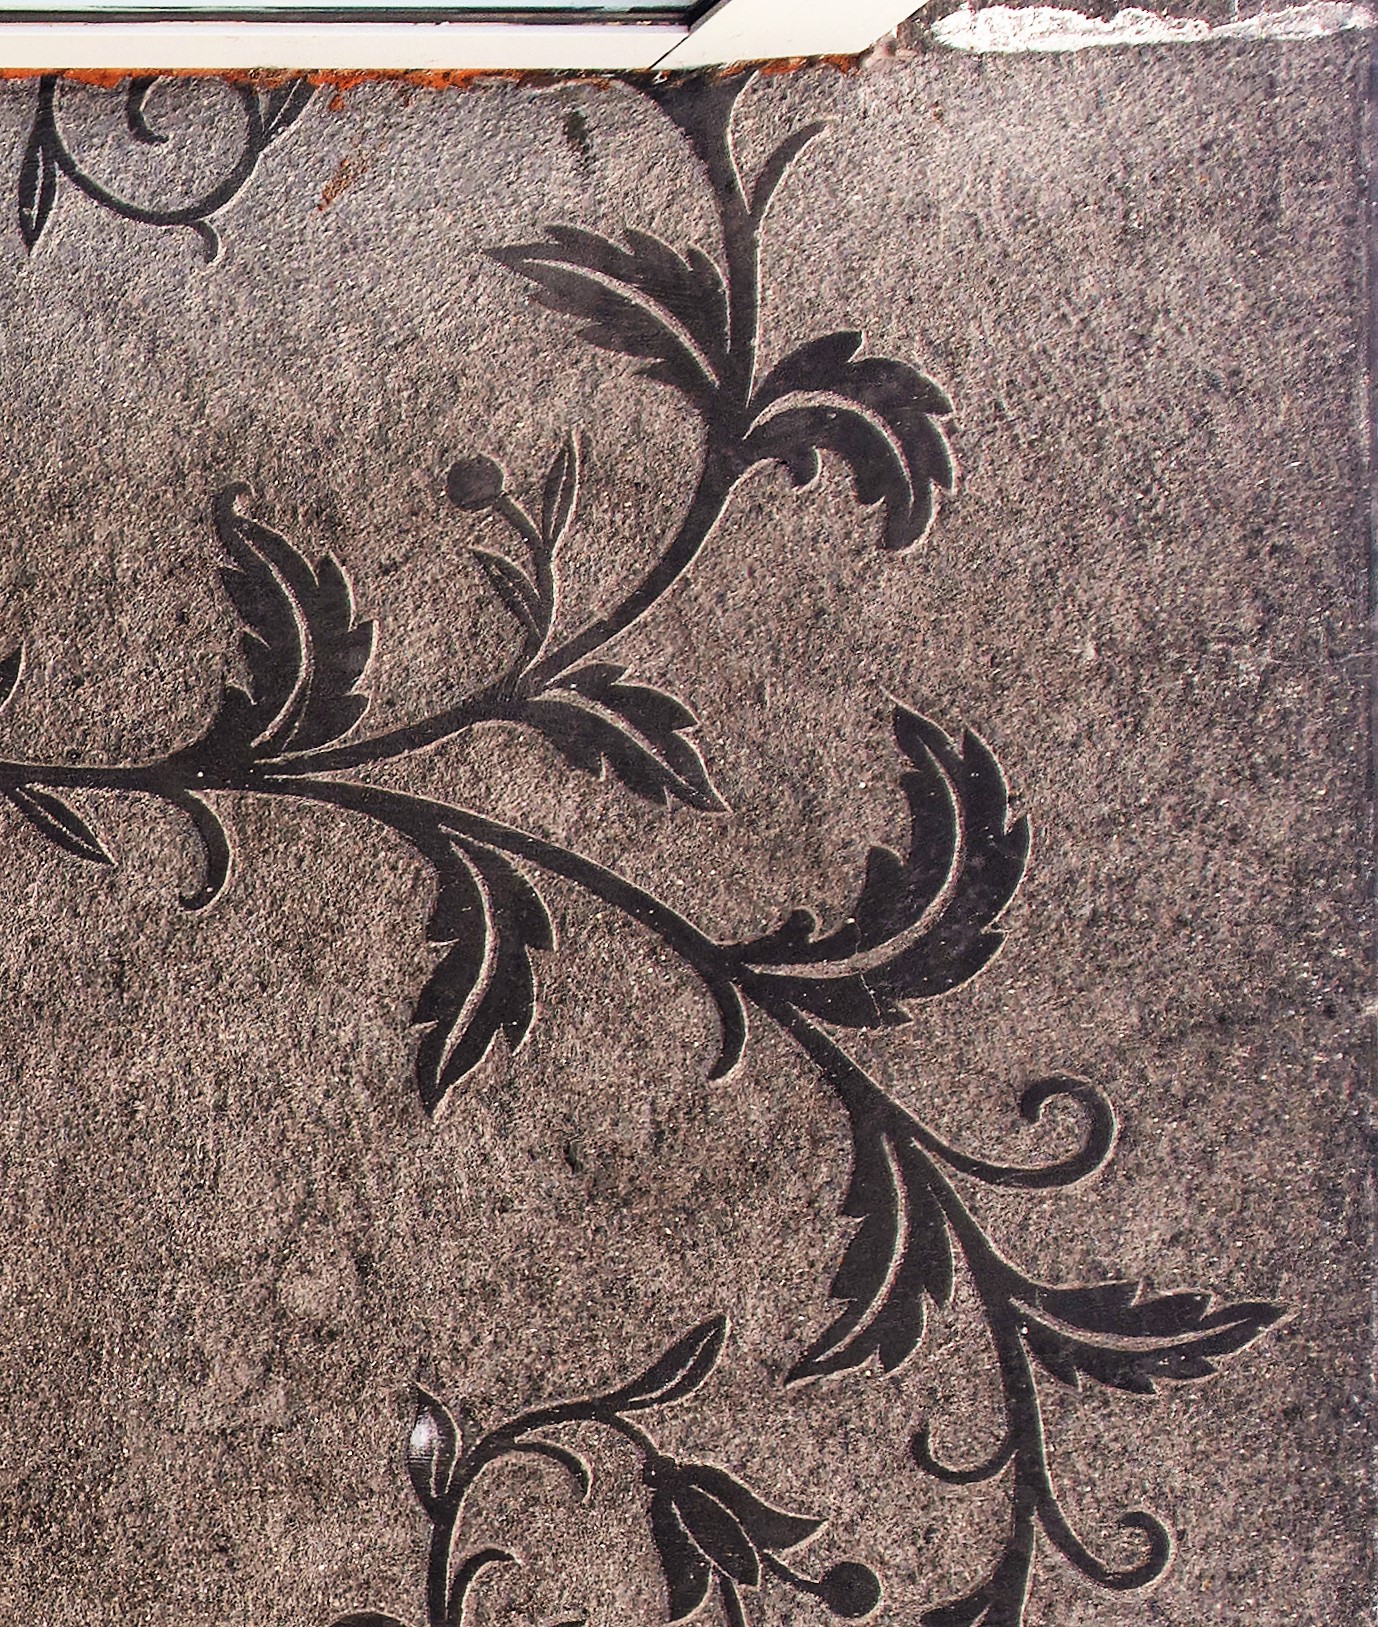 Dekoracja o motywie roślinnym, wykuta w tynku na suficie nad wejściem do kamienicy na Starowiejskiej (fragment)